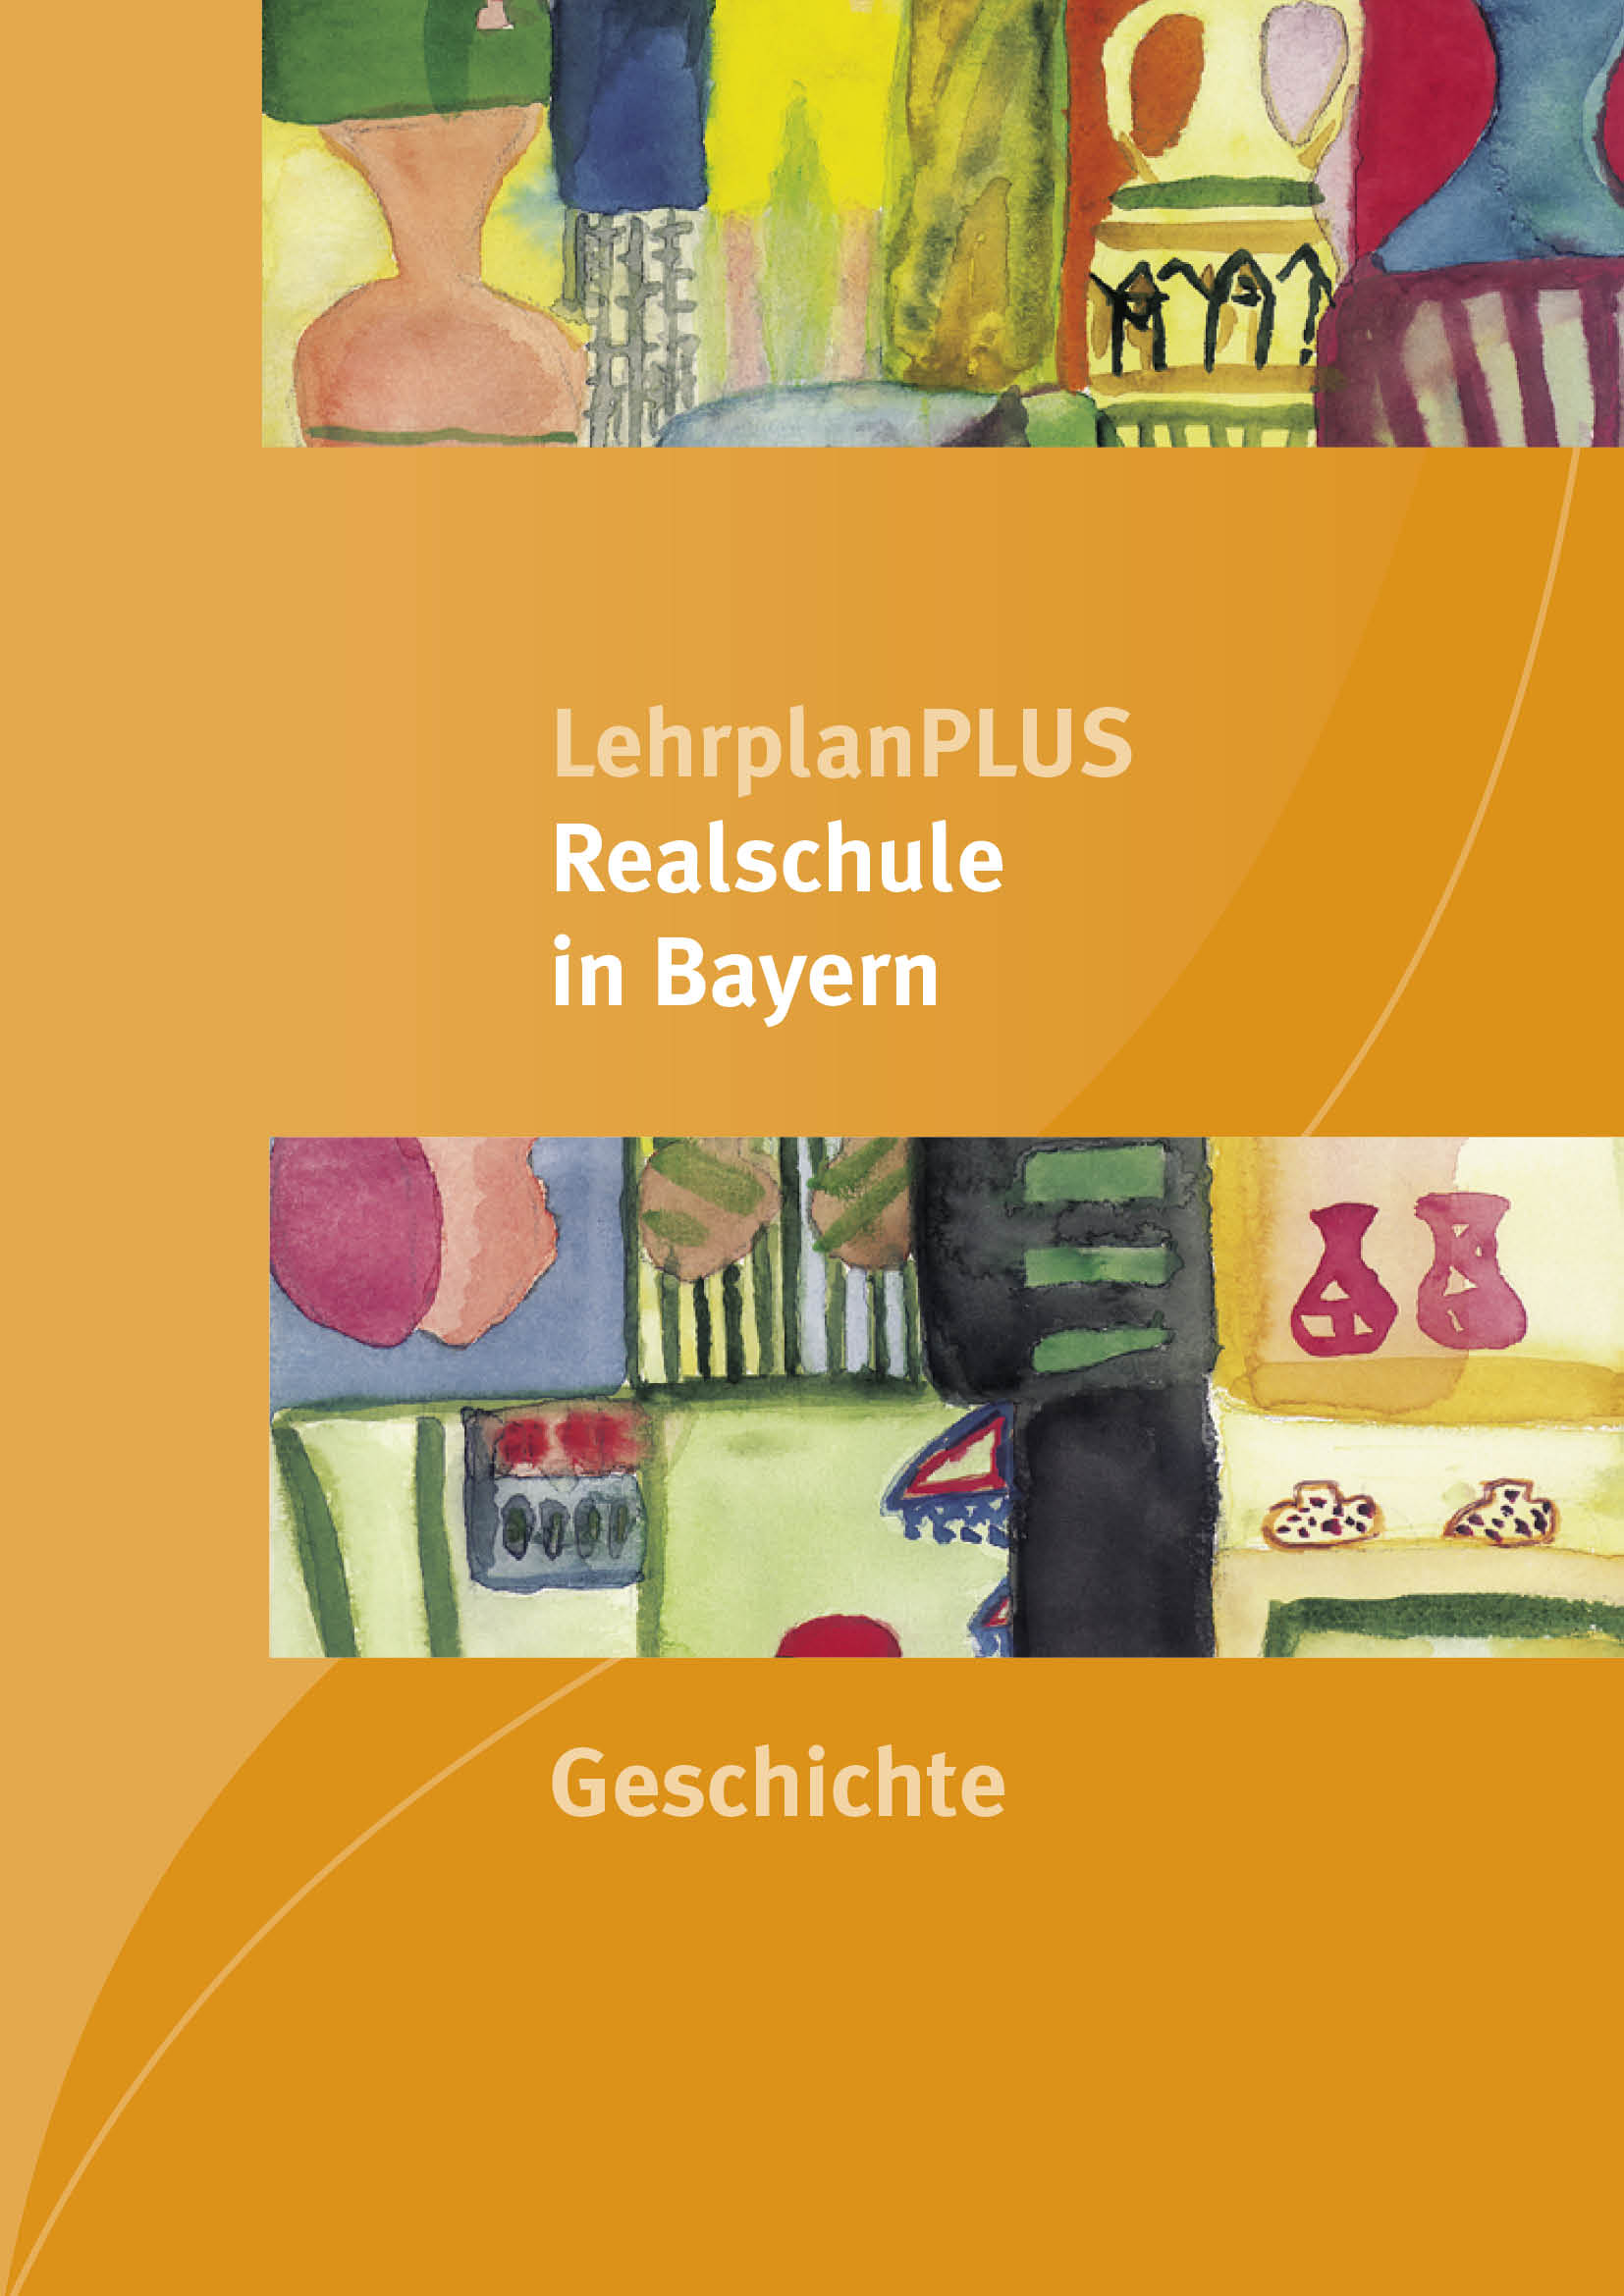 LehrplanPLUS Realschule in Bayern - Geschichte